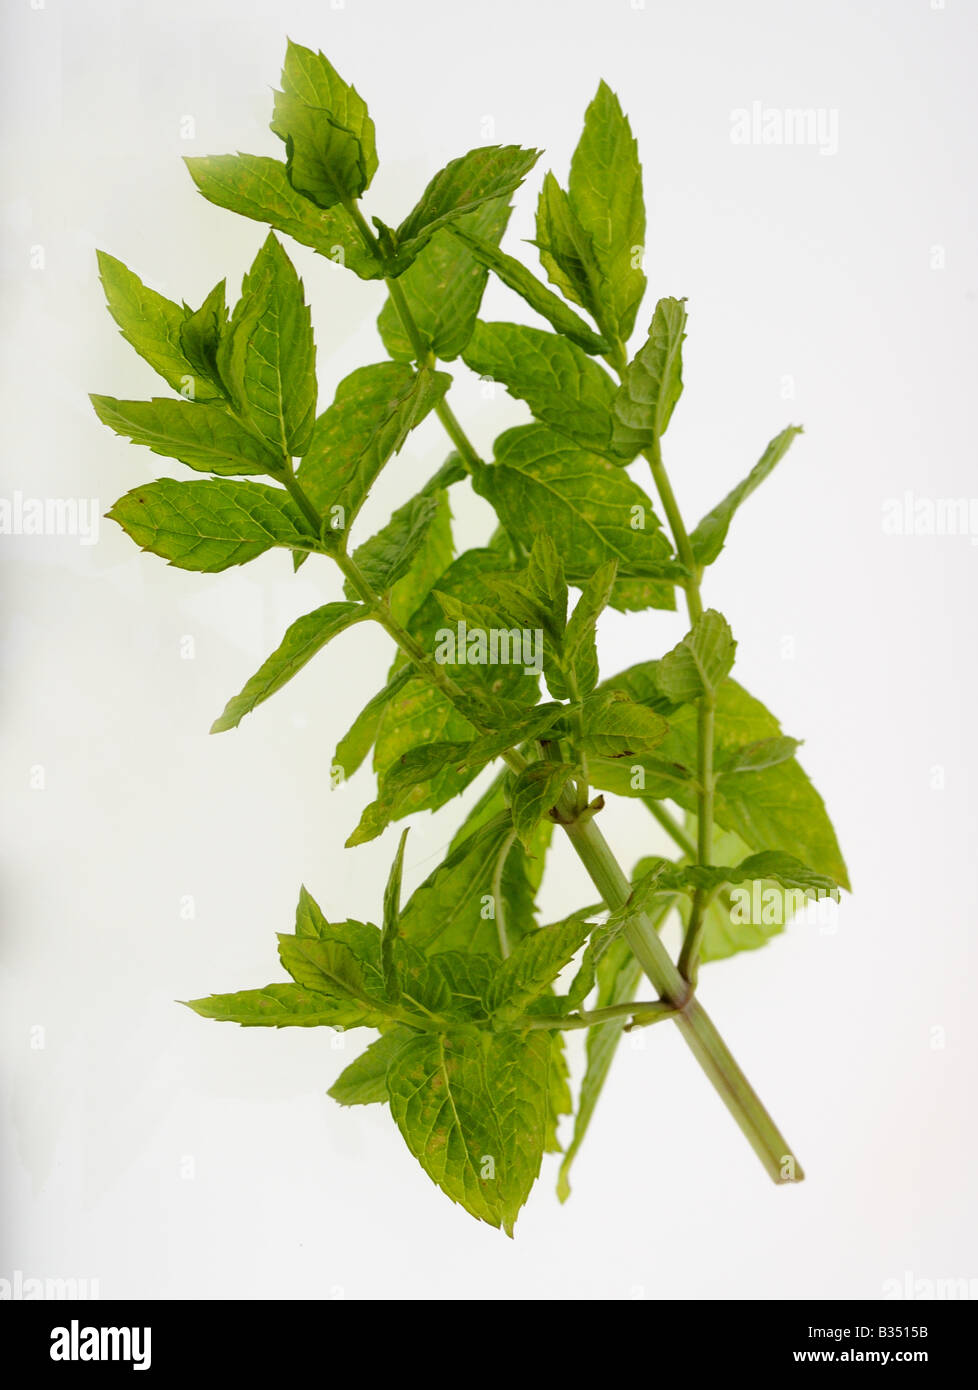 Hierbas Hierbas culinarias menta Mentha viridis, uno de los más populares de las hierbas usadas en la cocina. Foto de stock